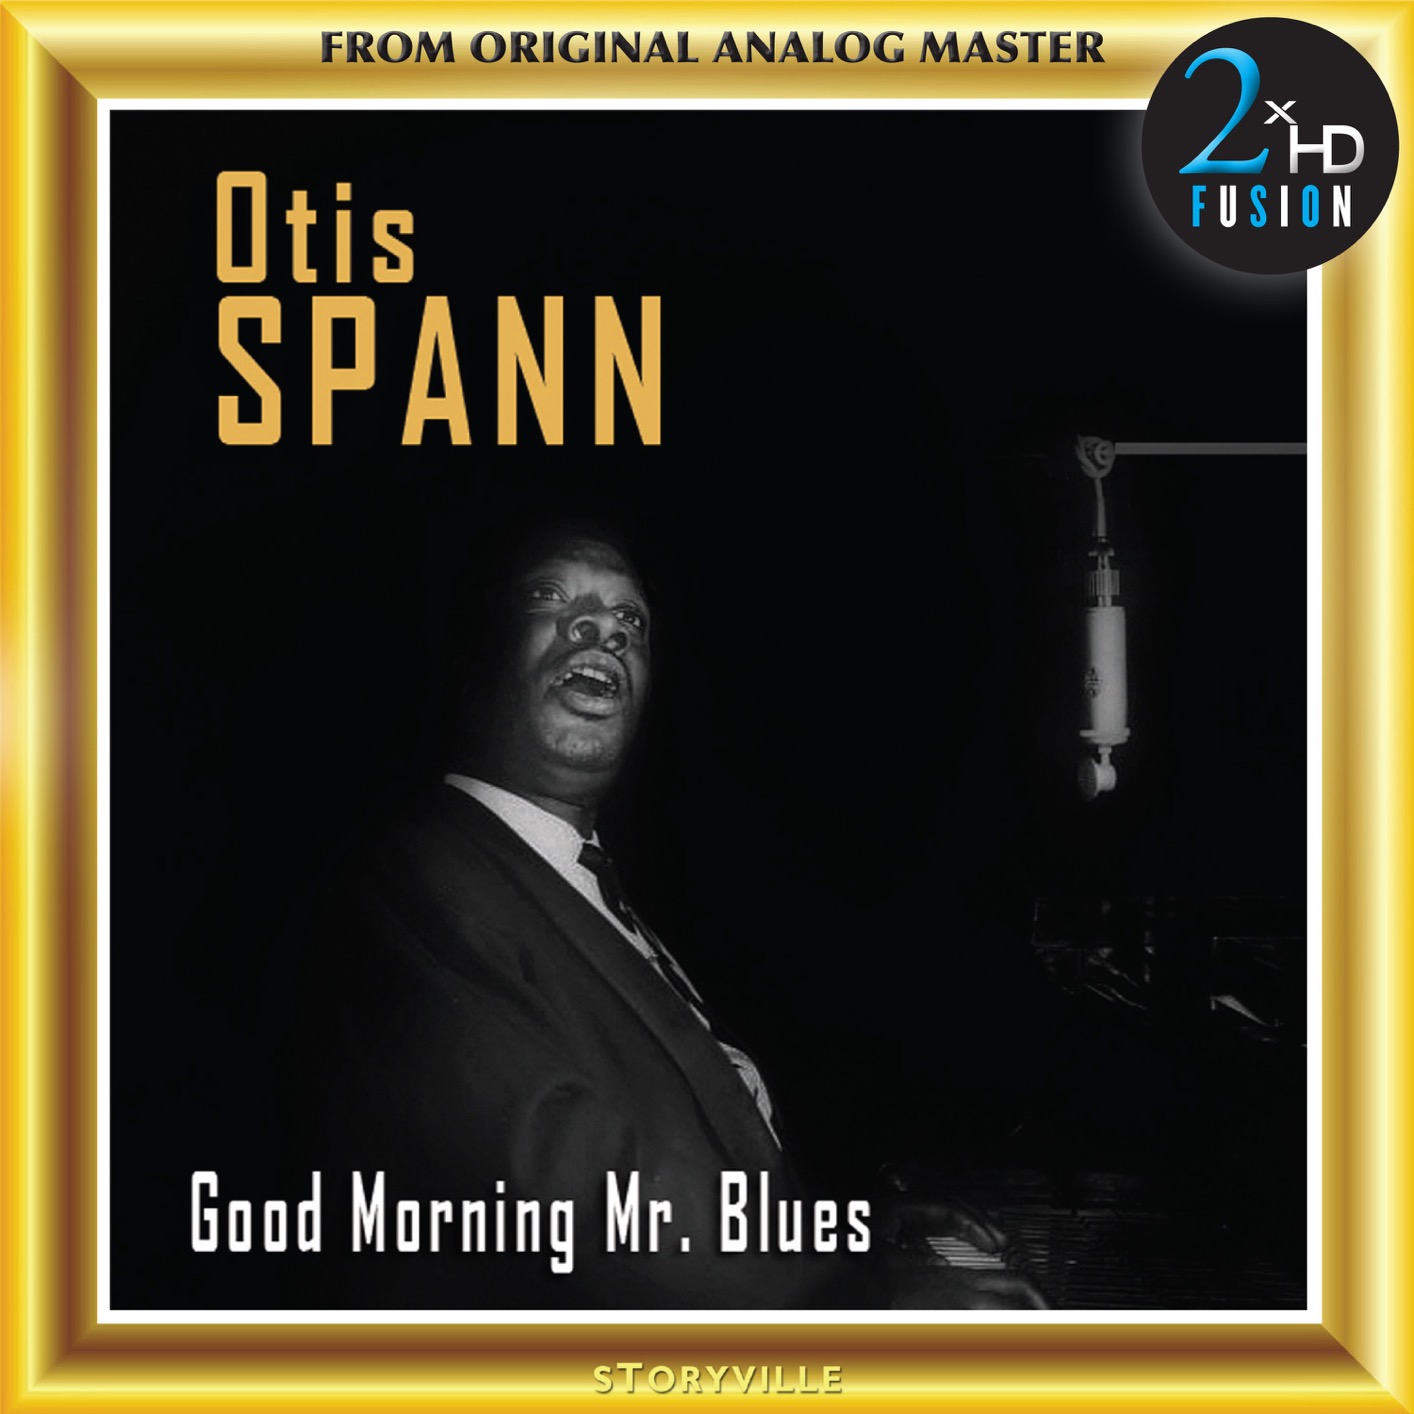 Otis Spann - Good Morning Mr. Blues (1996/2017) [HDTracks DSF DSD128/5.64MHz + FLAC 24bit/88,2kHz]